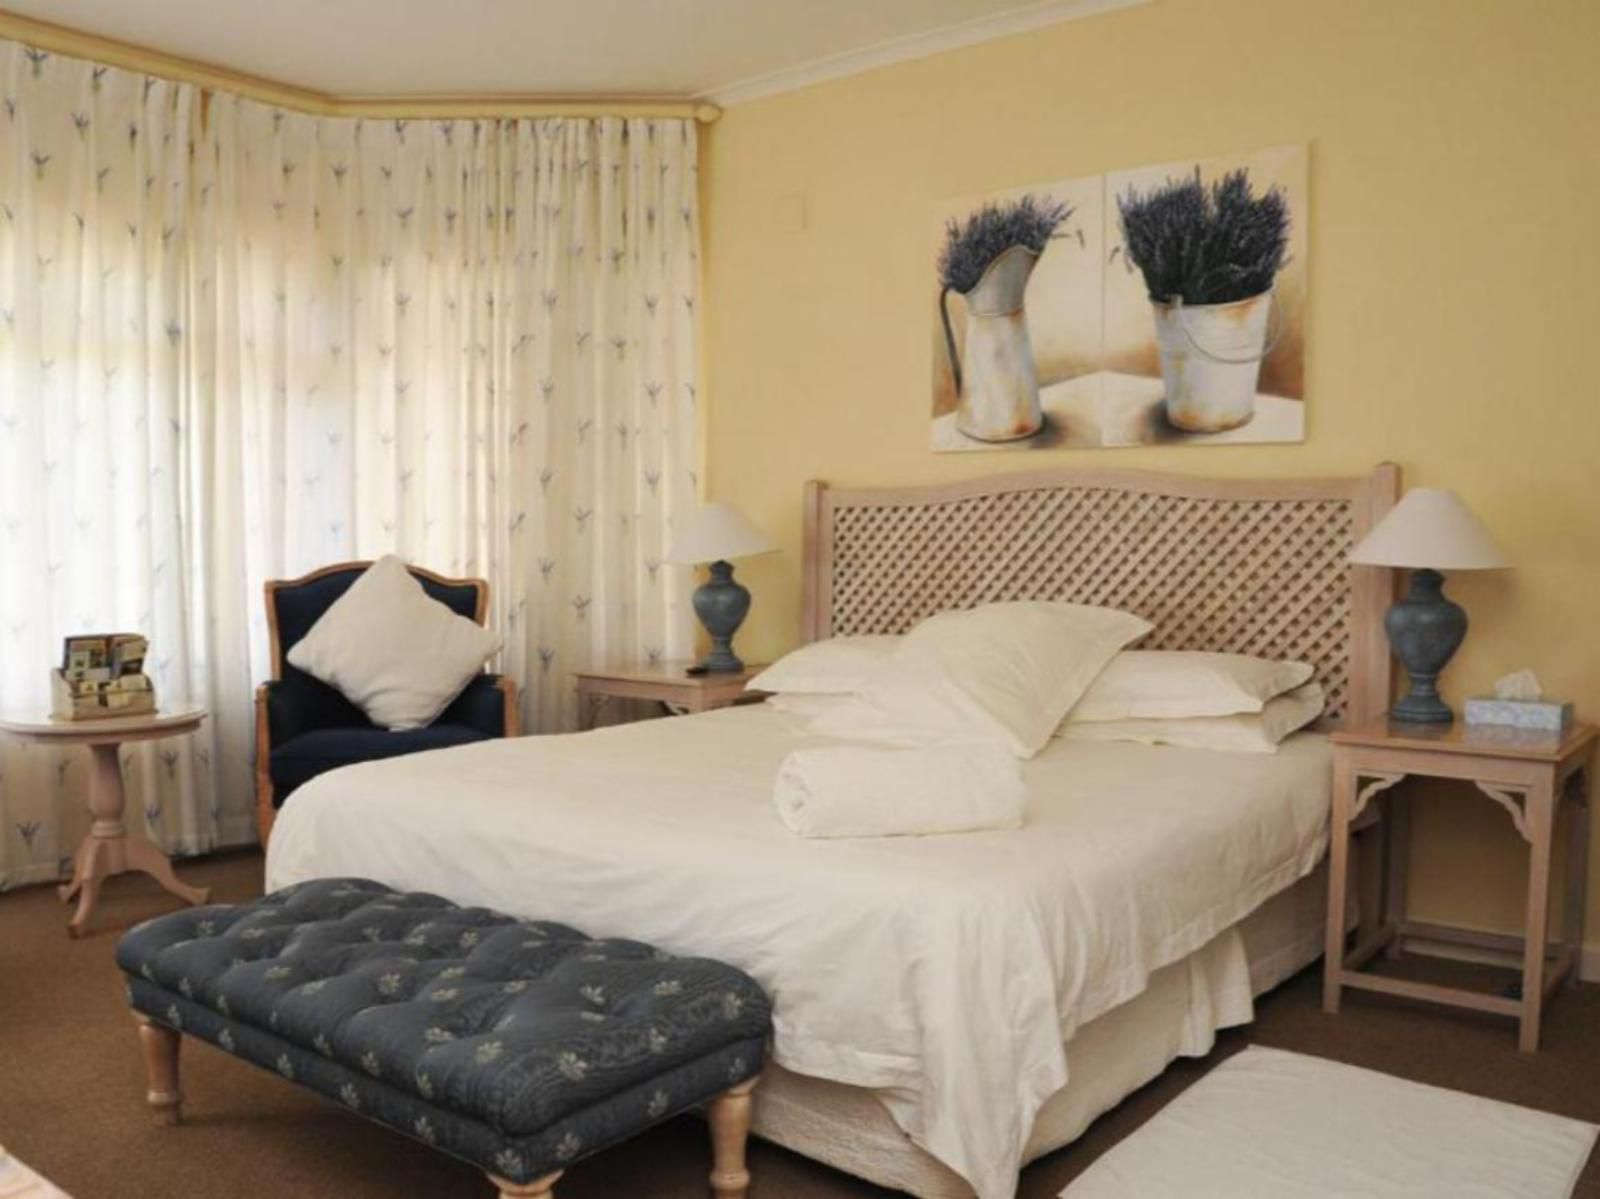 Sandbaai Country House Sandbaai Hermanus Western Cape South Africa Bedroom